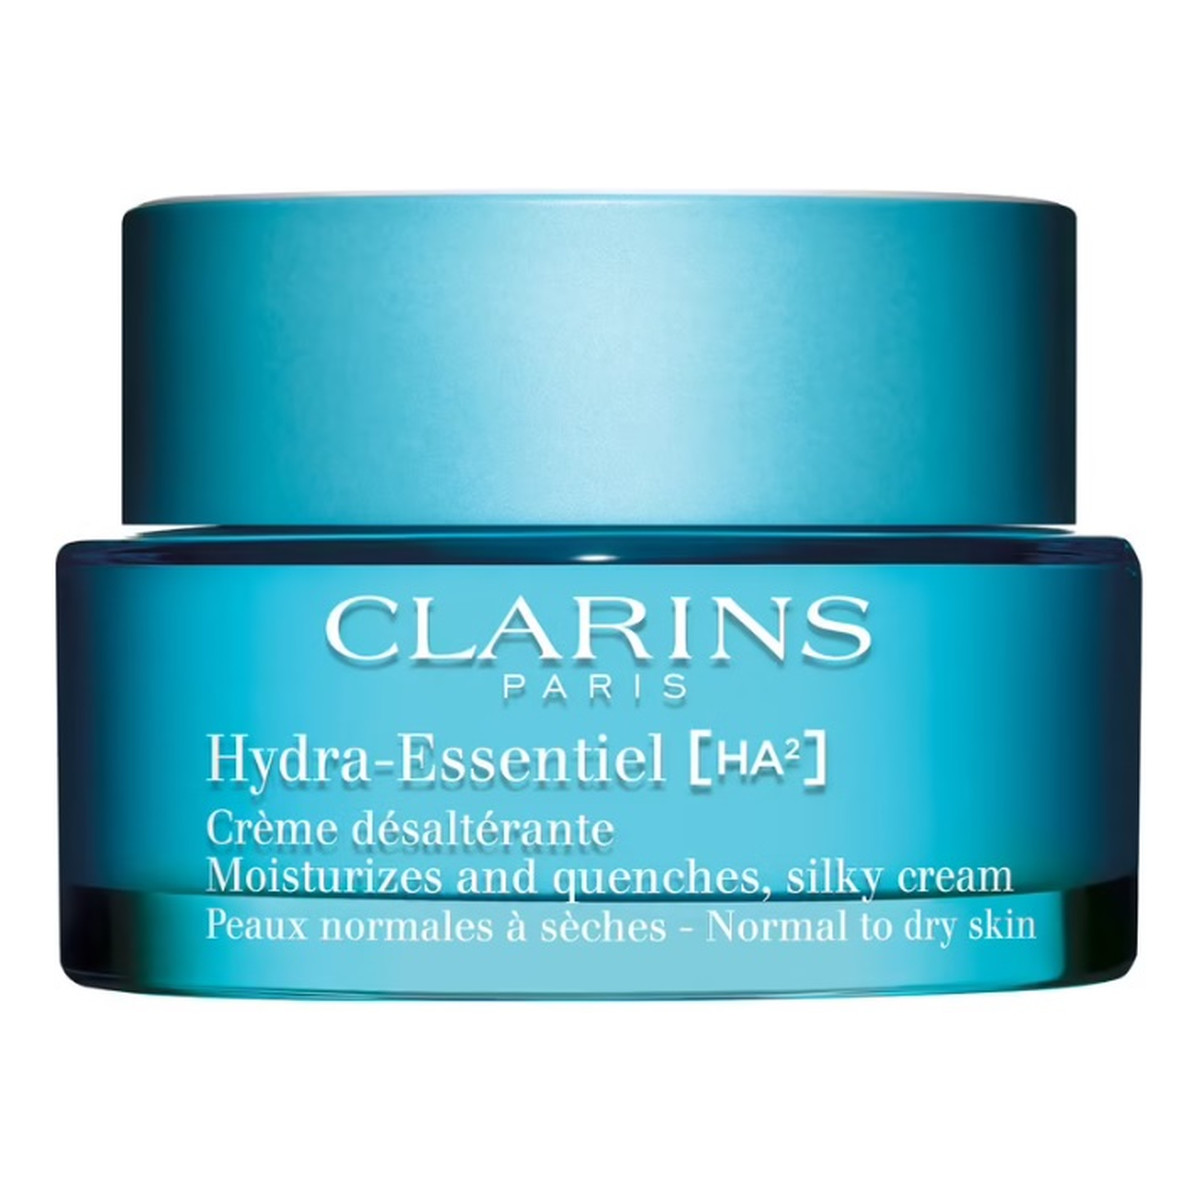 Clarins Hydra-Essentiel [HA²] nawilżający Krem do skóry normalnej i suchej 50ml